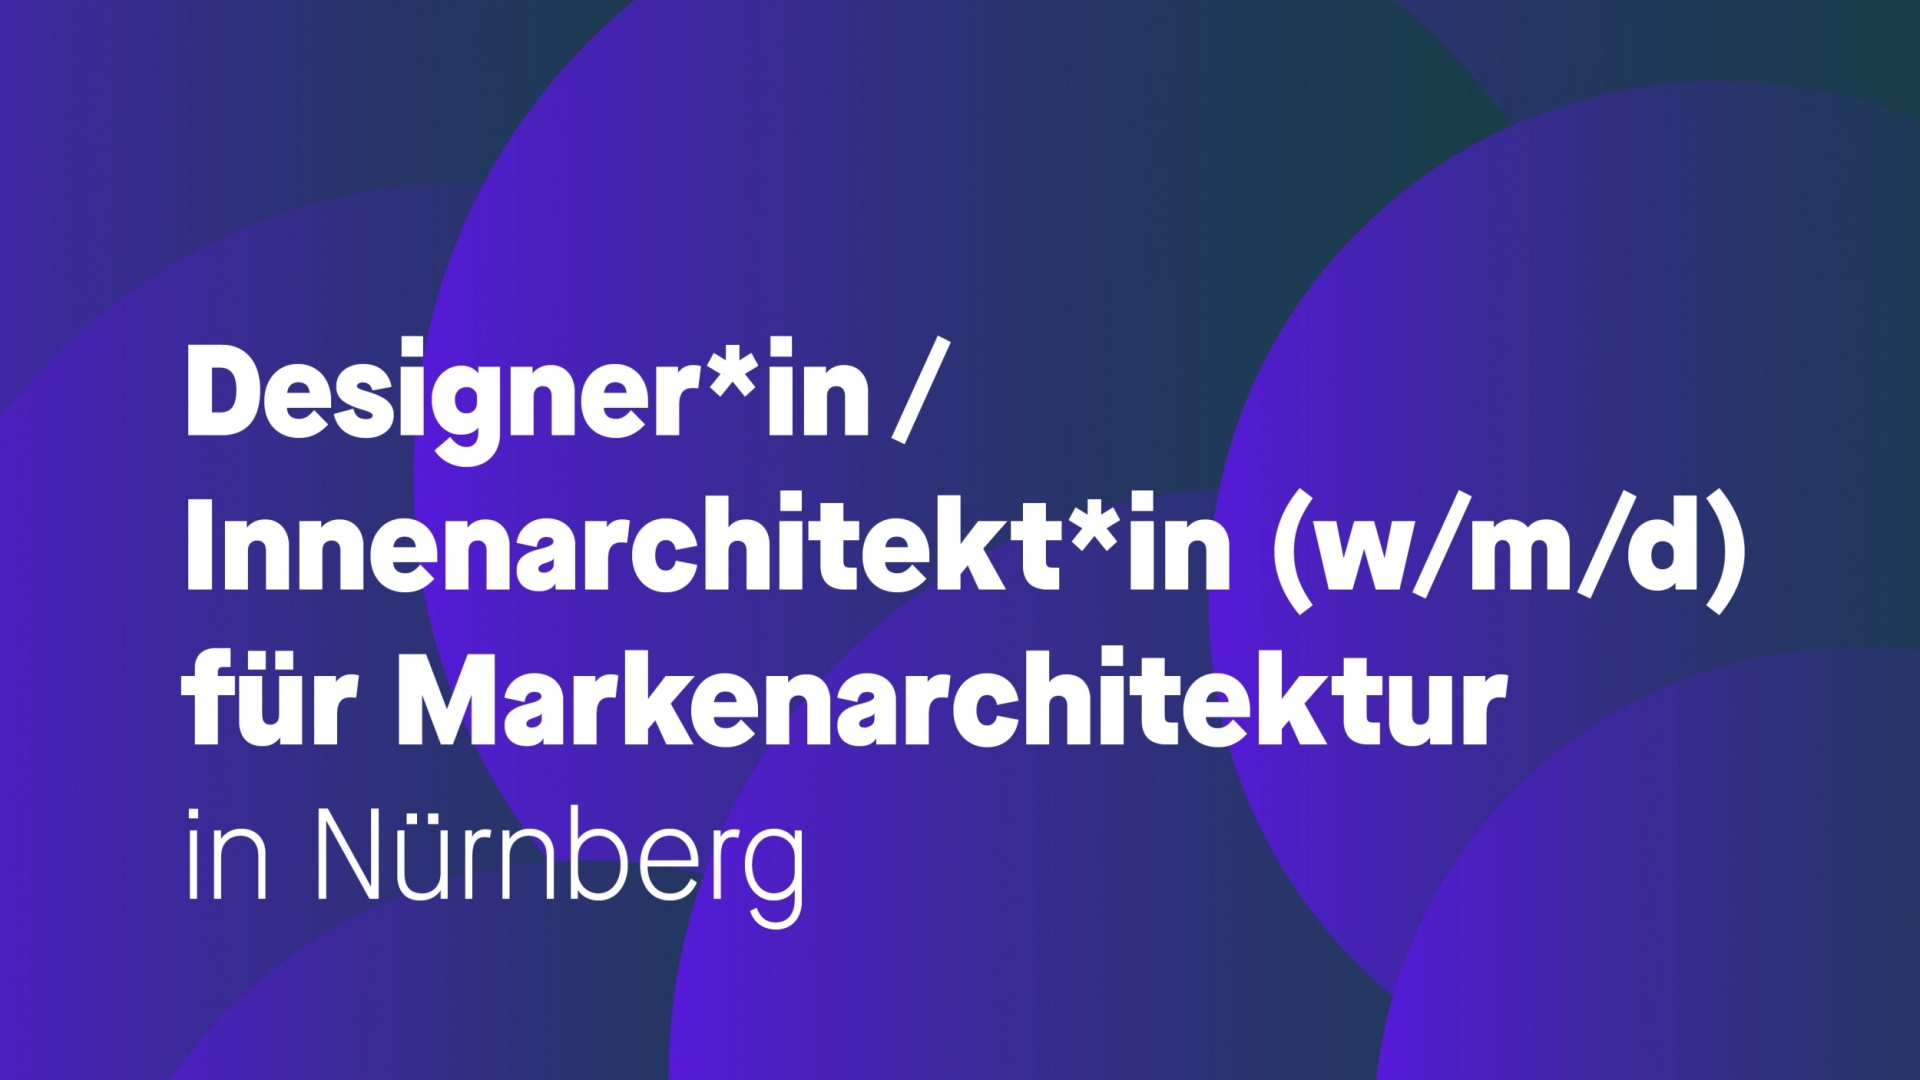 Designer*in/Innenarchitekt*in für Markenarchitektur (w/m/d)